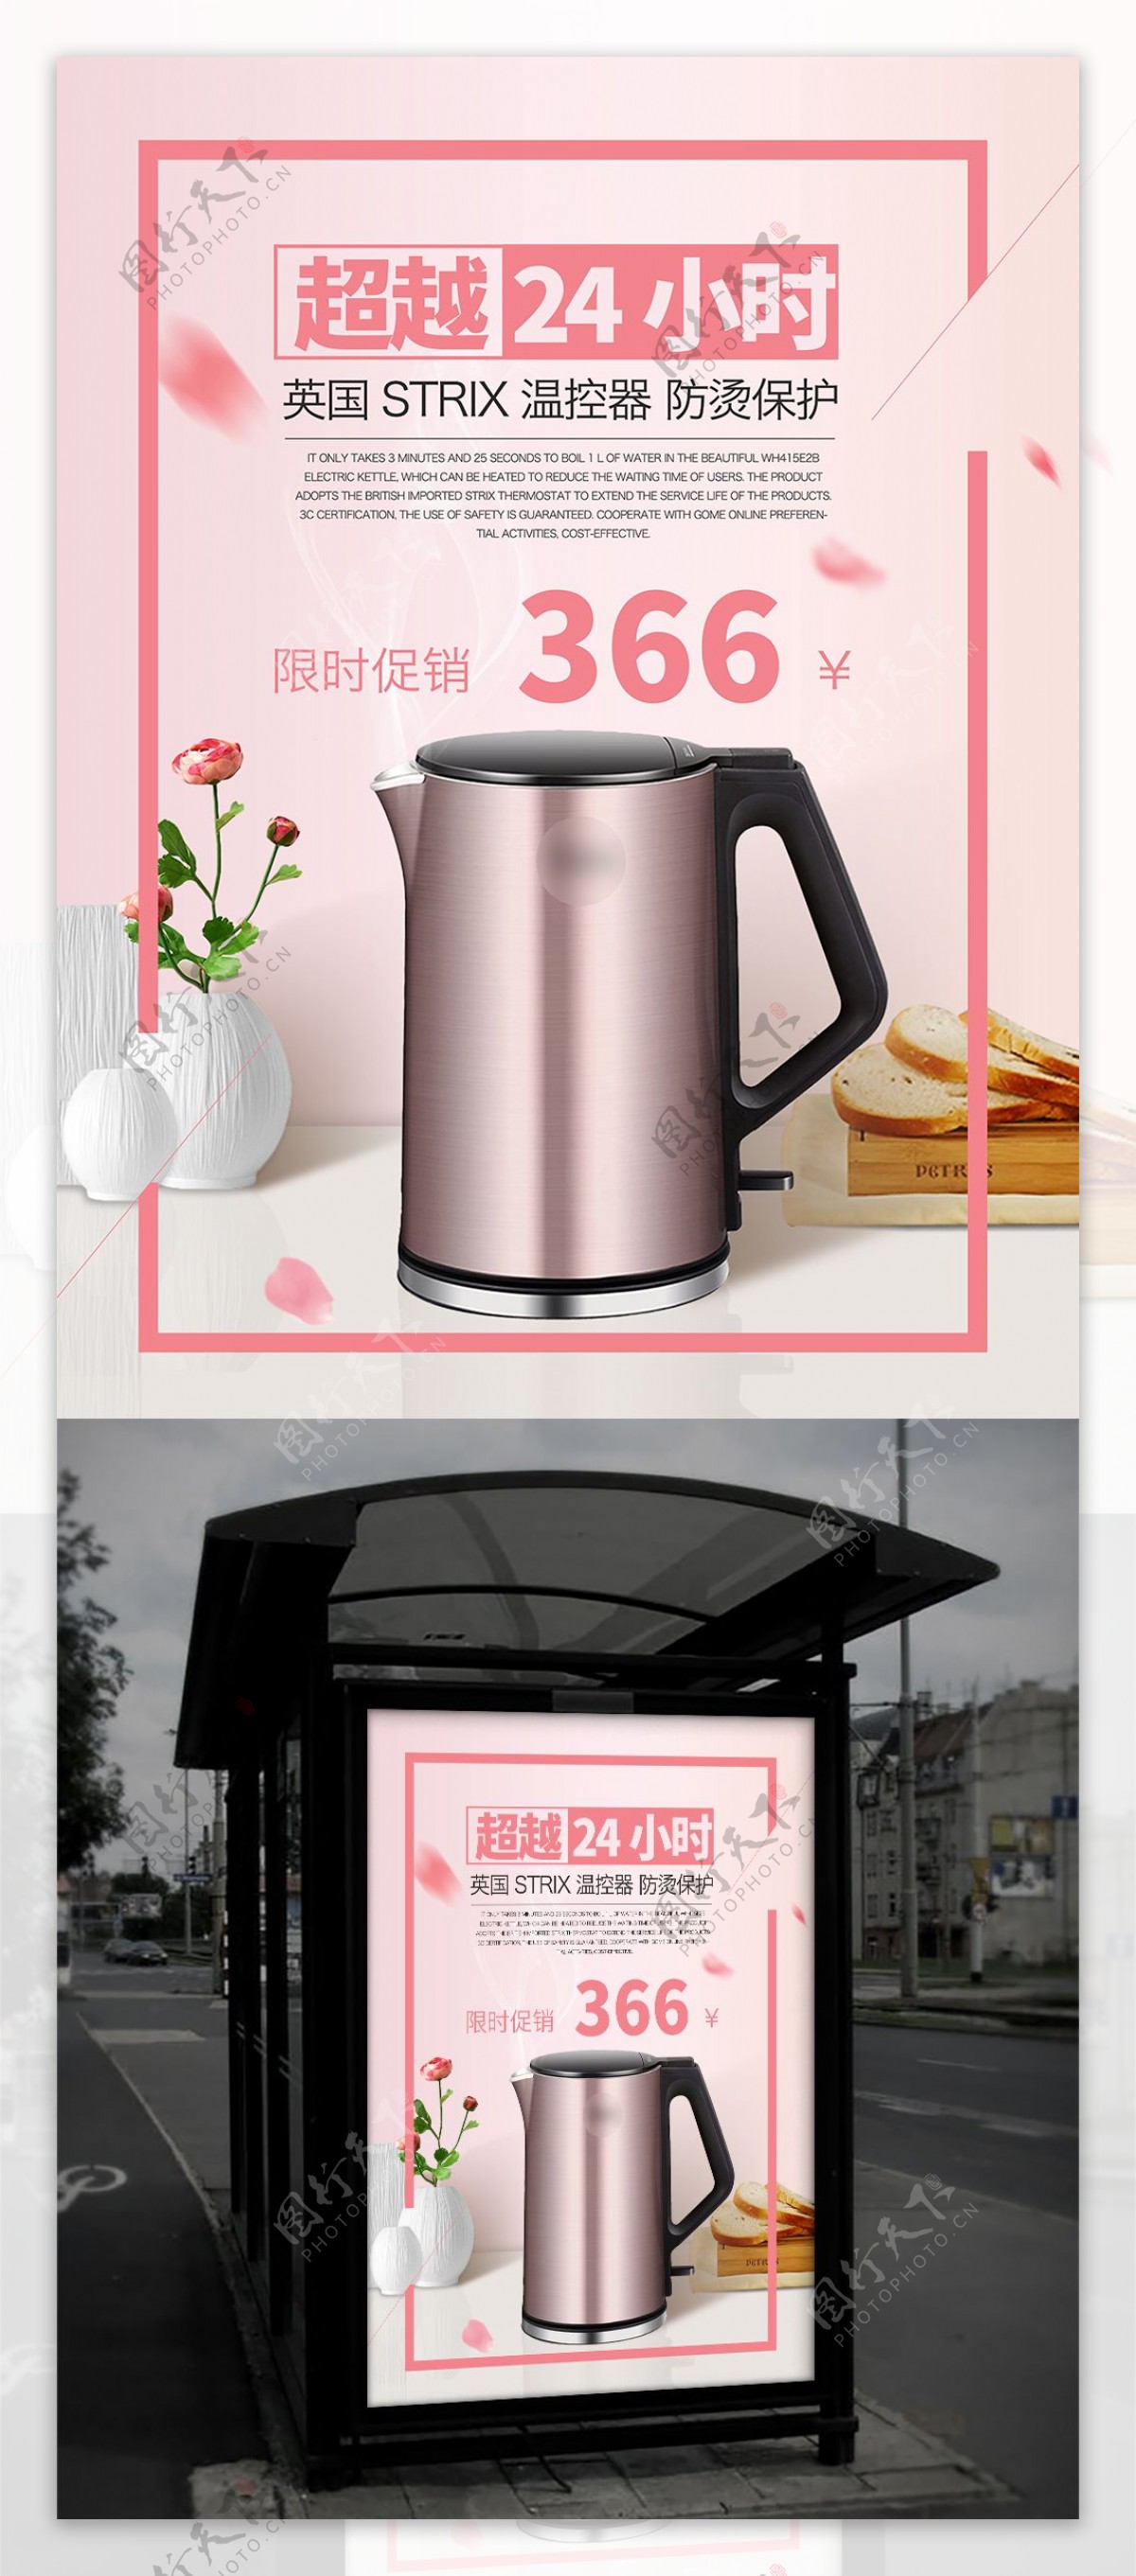 粉色花瓣电器电热水壶促销海报